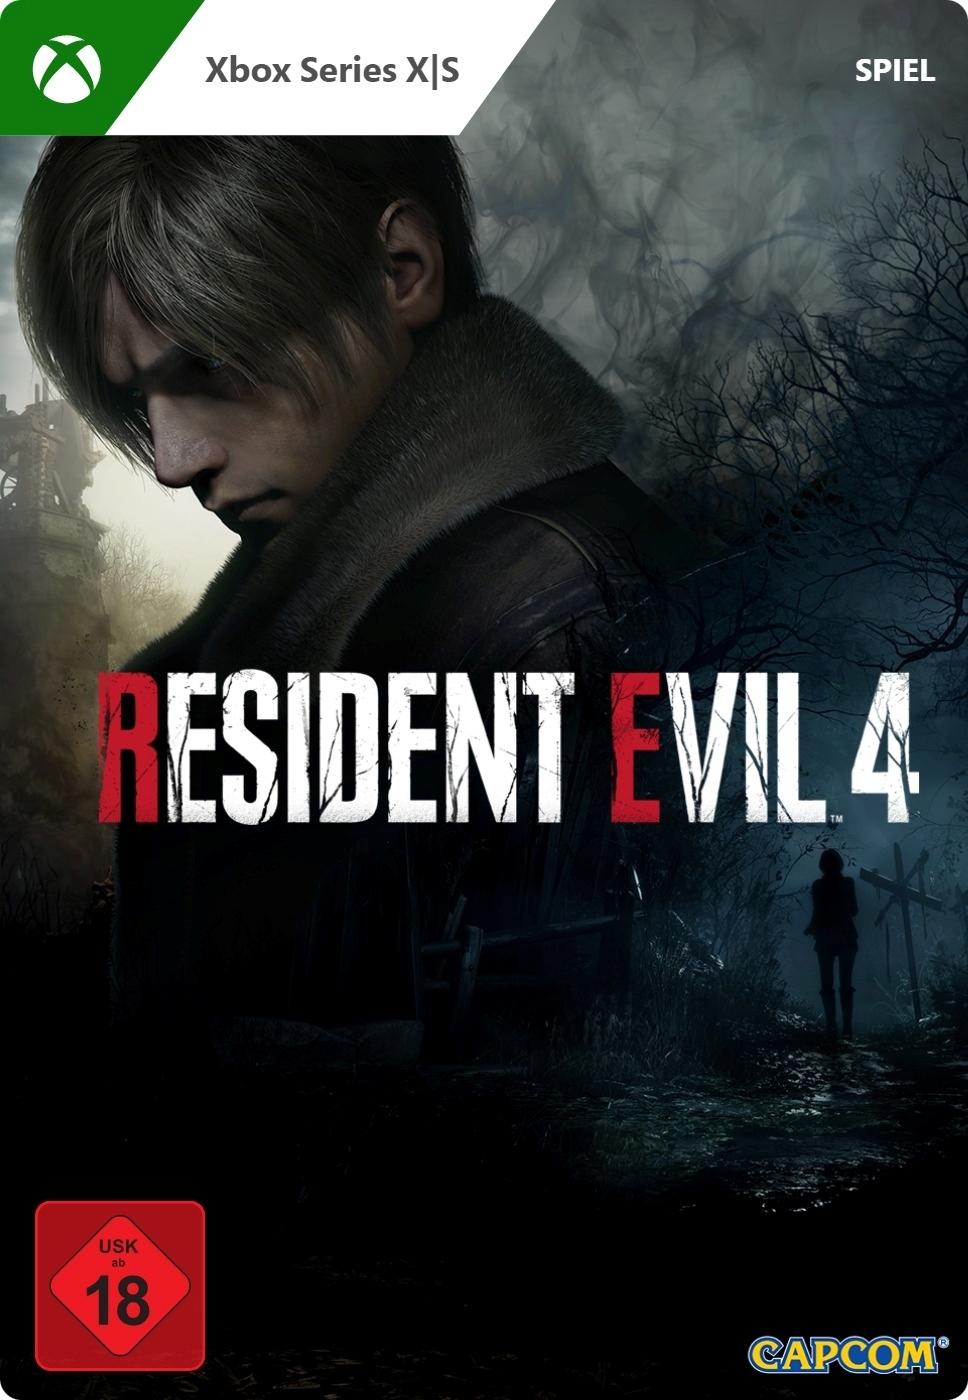 Resident Evil 4 - Xbox Series X - Game | G3Q-01513 (6d31a99c-b8cd-fc4d-aa8b-86f202a17475)